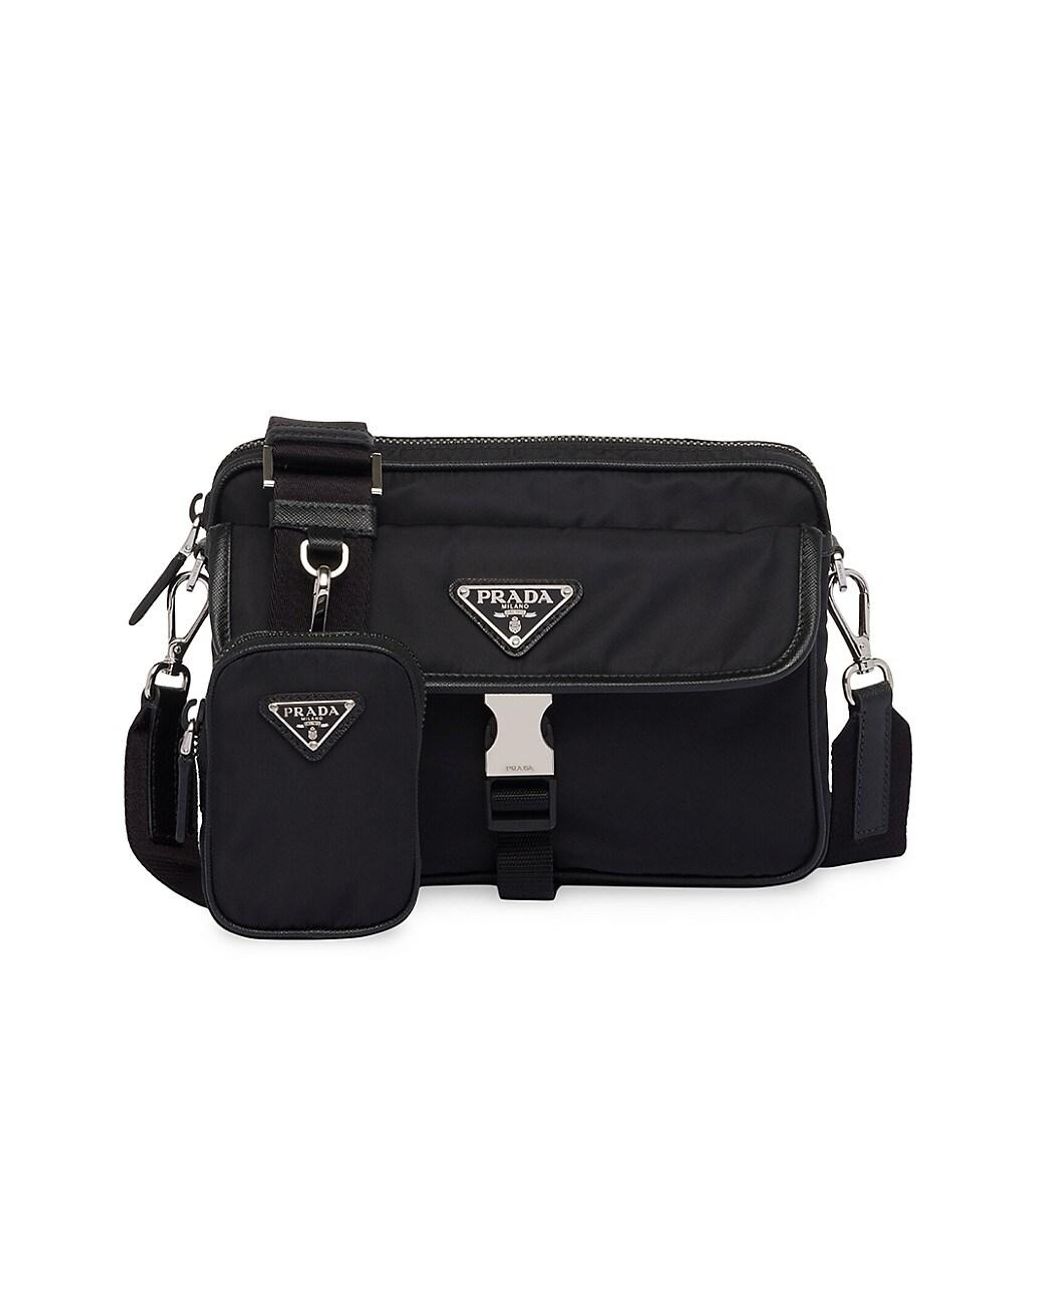 Prada Black Re-Nylon & Saffiano Leather Shoulder Bag Prada